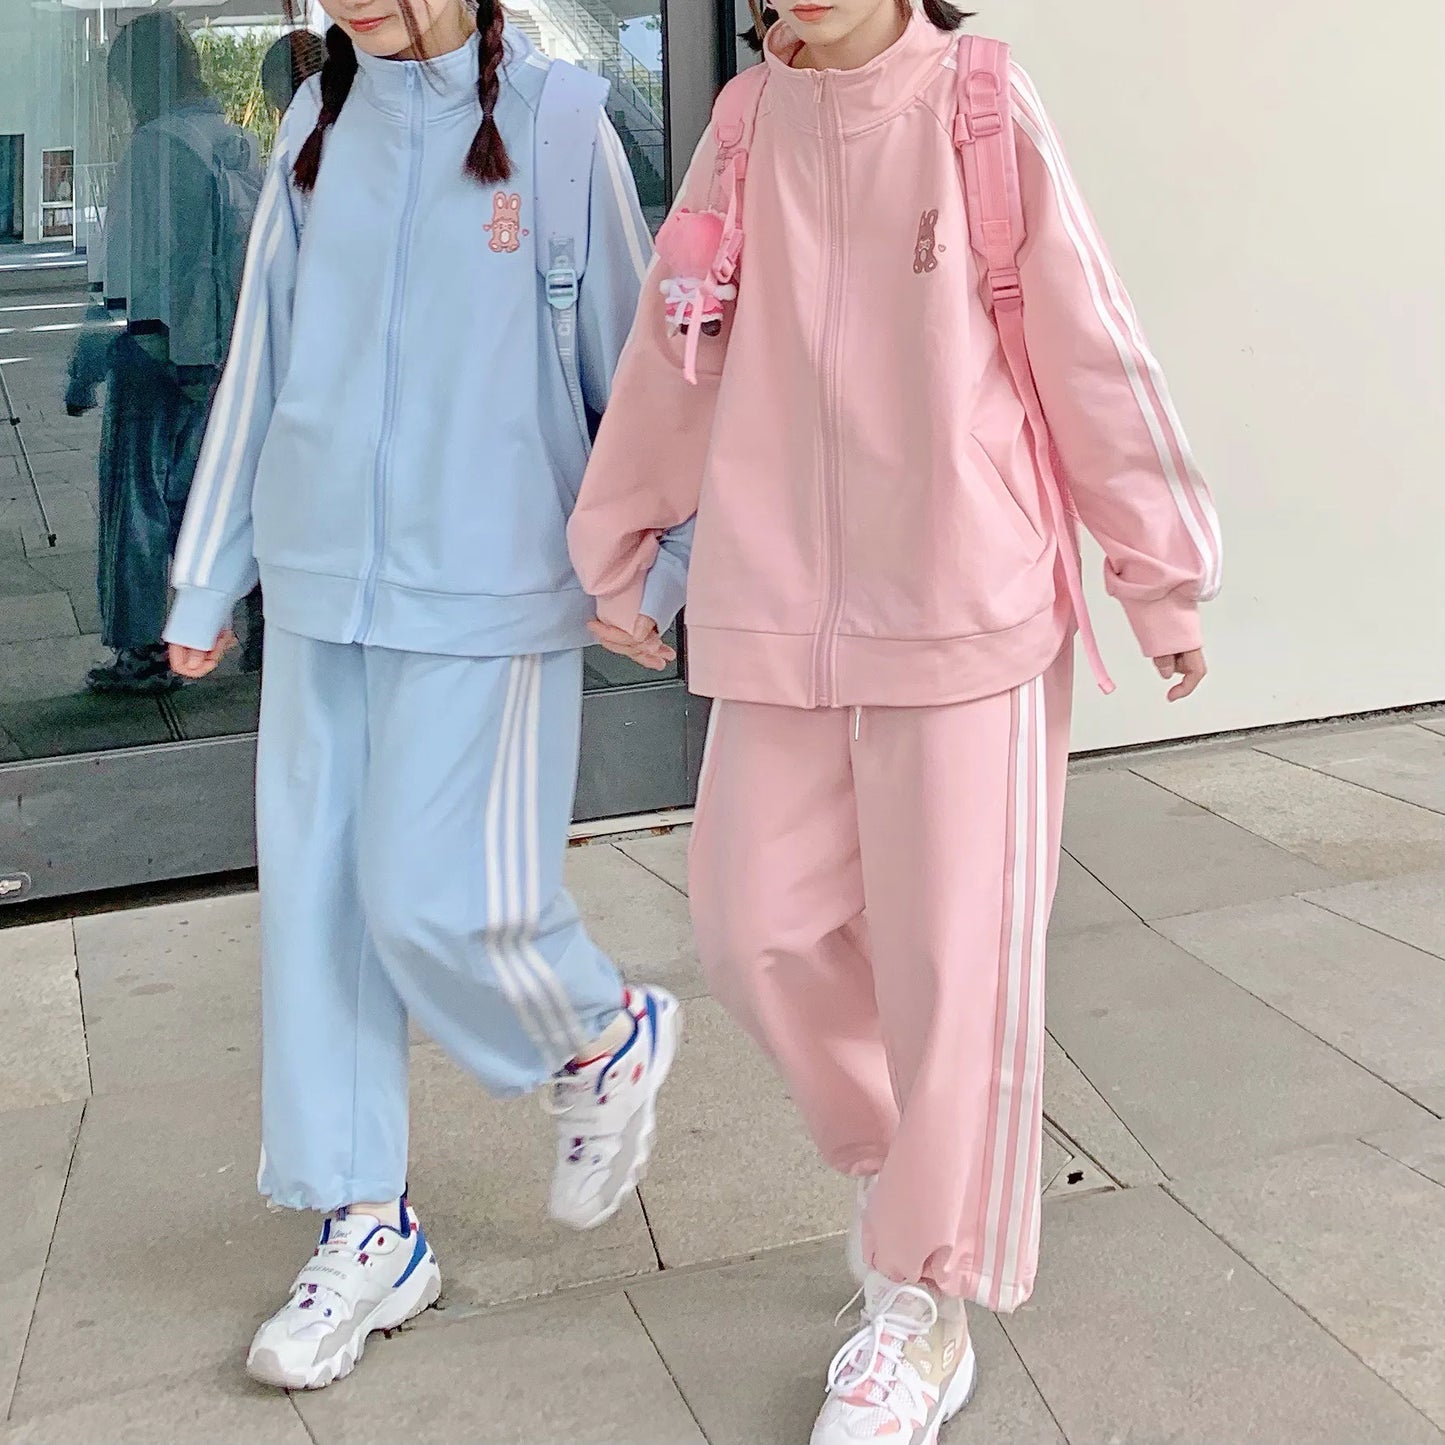 Pastellfarbene Hoodies und Jogginghosen-Outfits